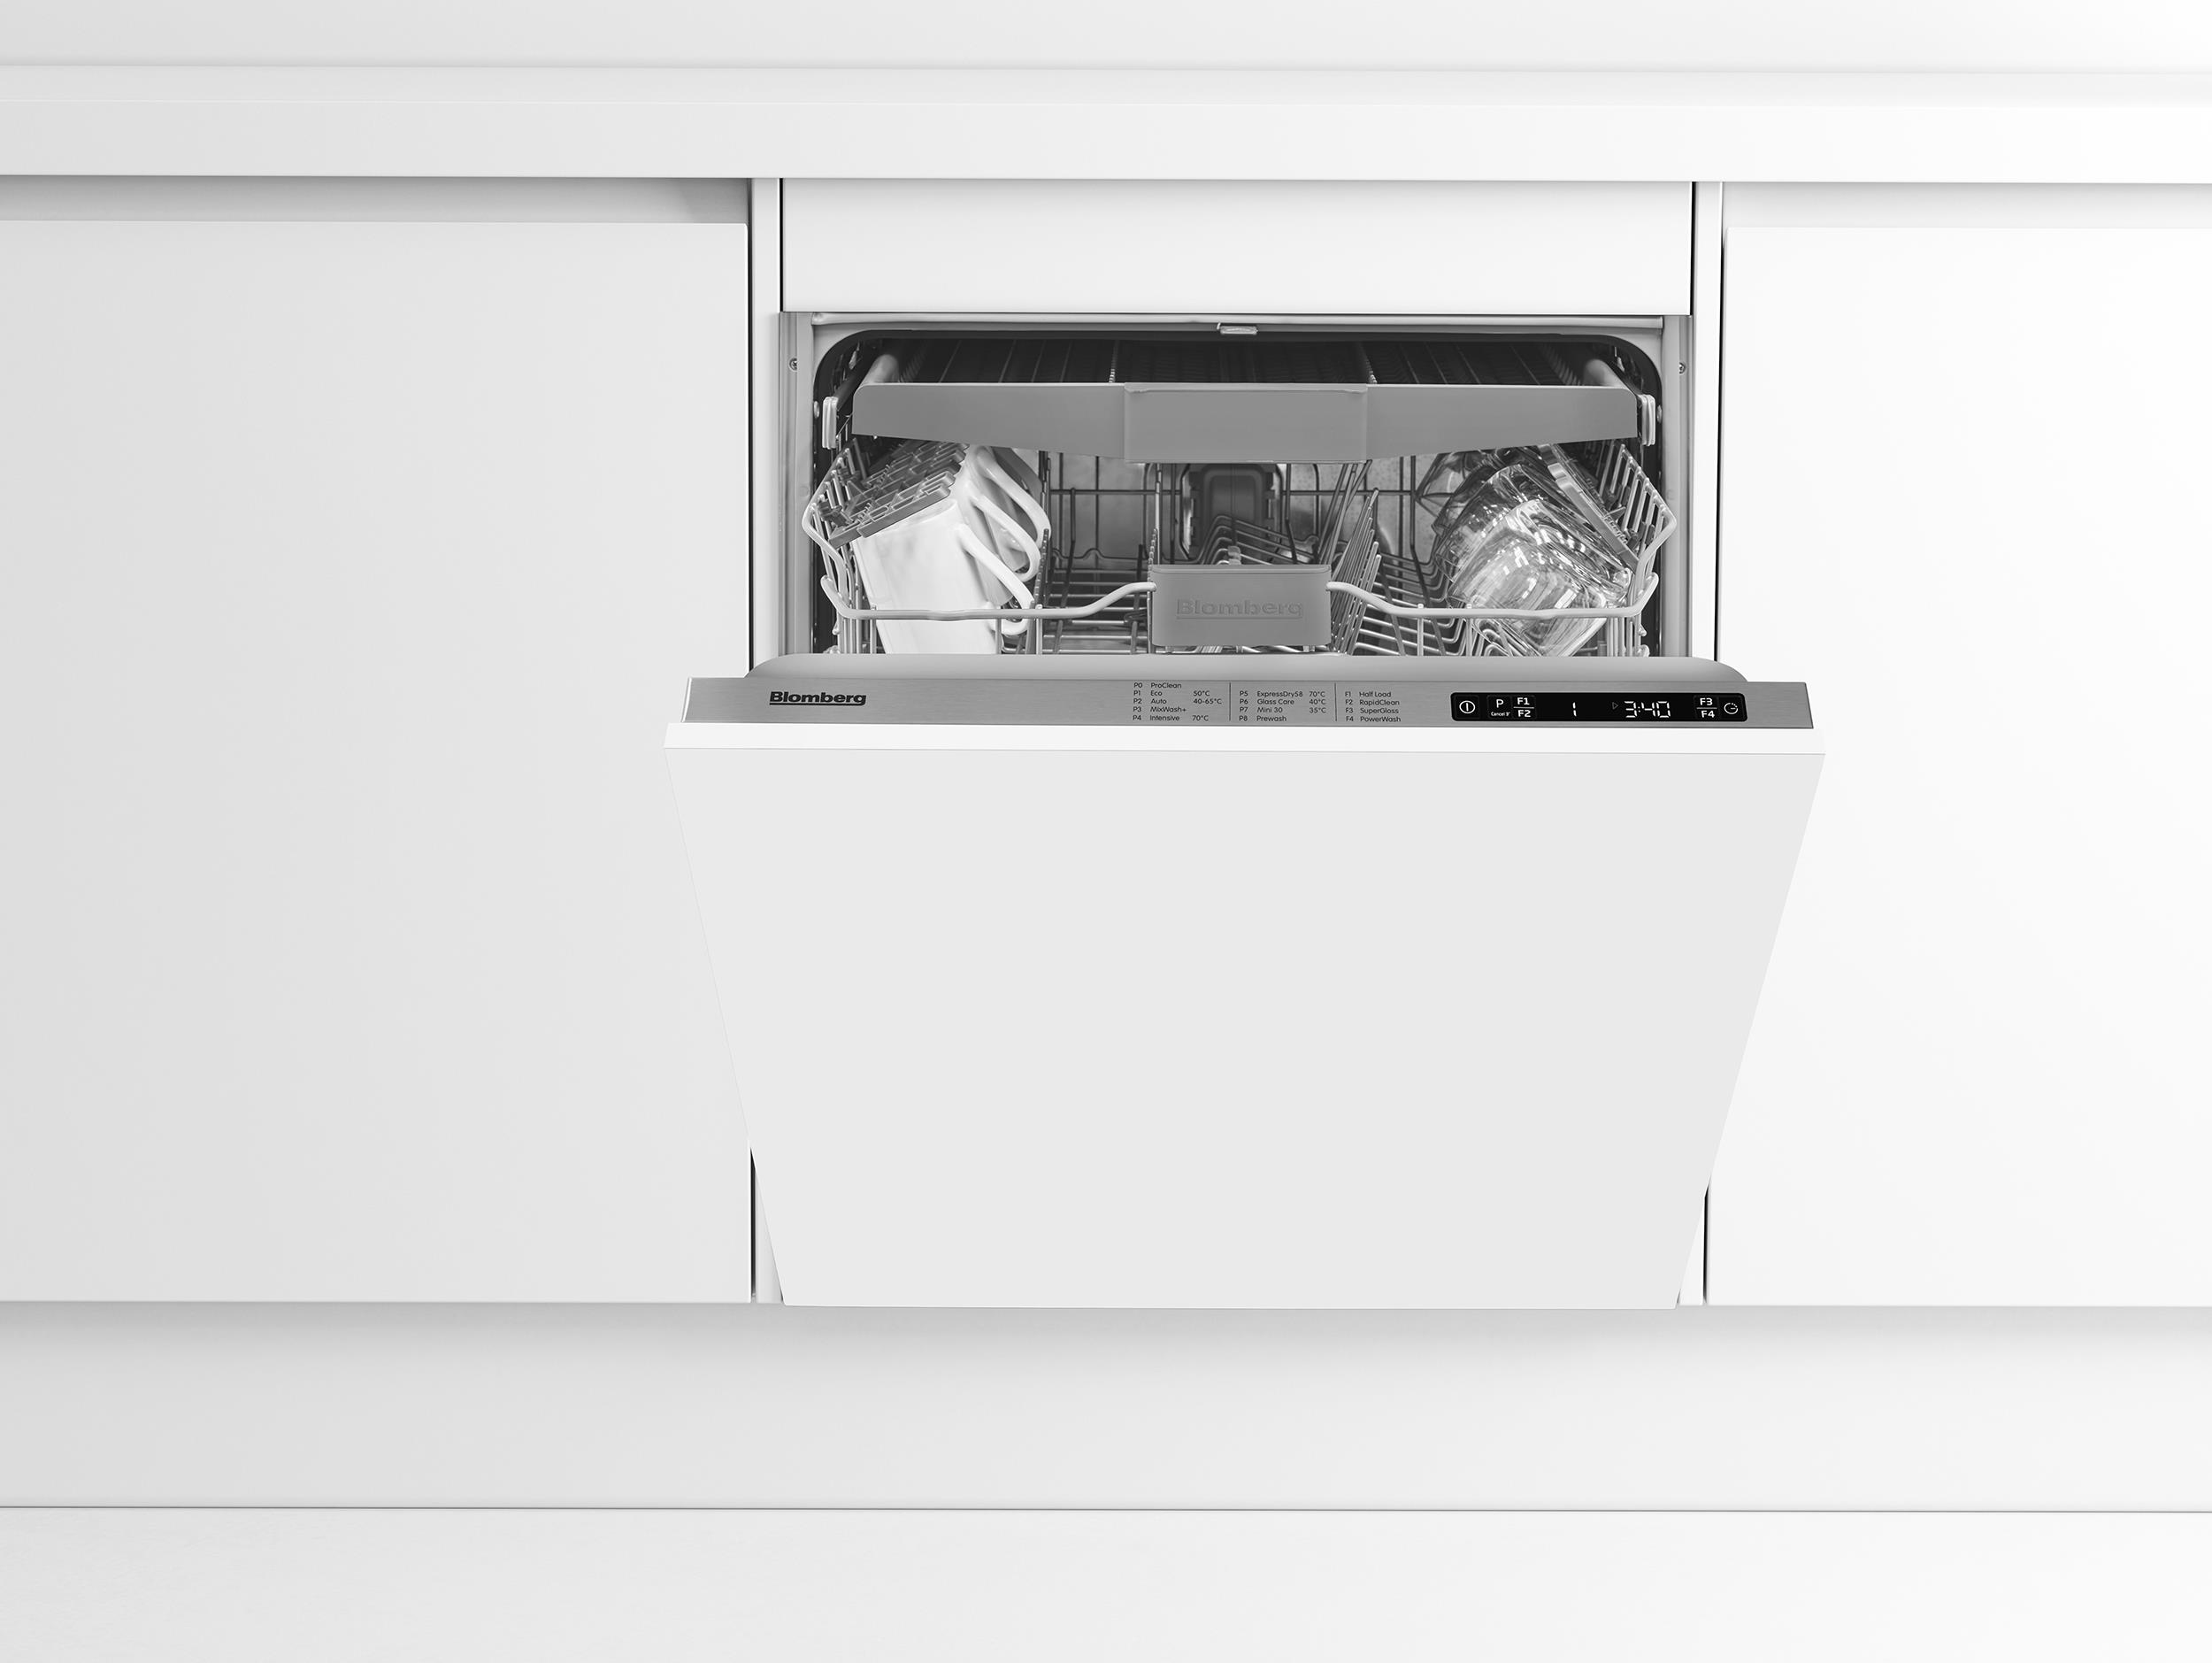 integrated dishwasher size